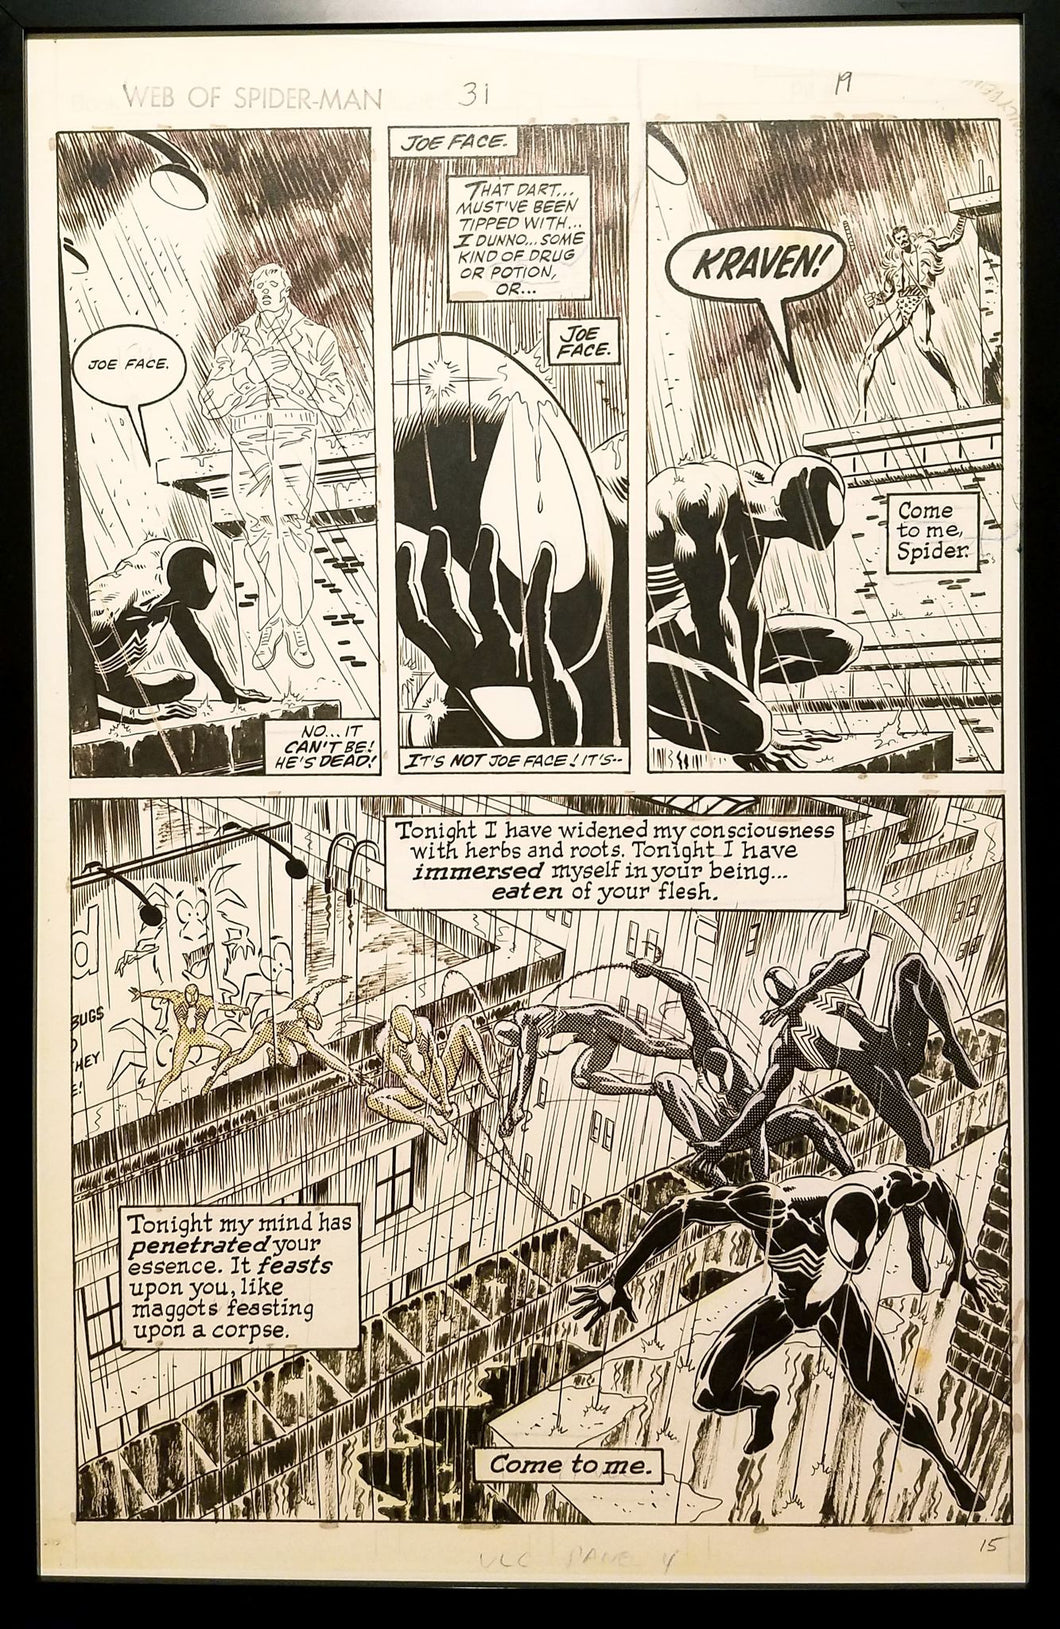 Web Spider-Man #31: Kraven's Last Hunt Mike Zeck 11x17 FRAMED Original Art Poster